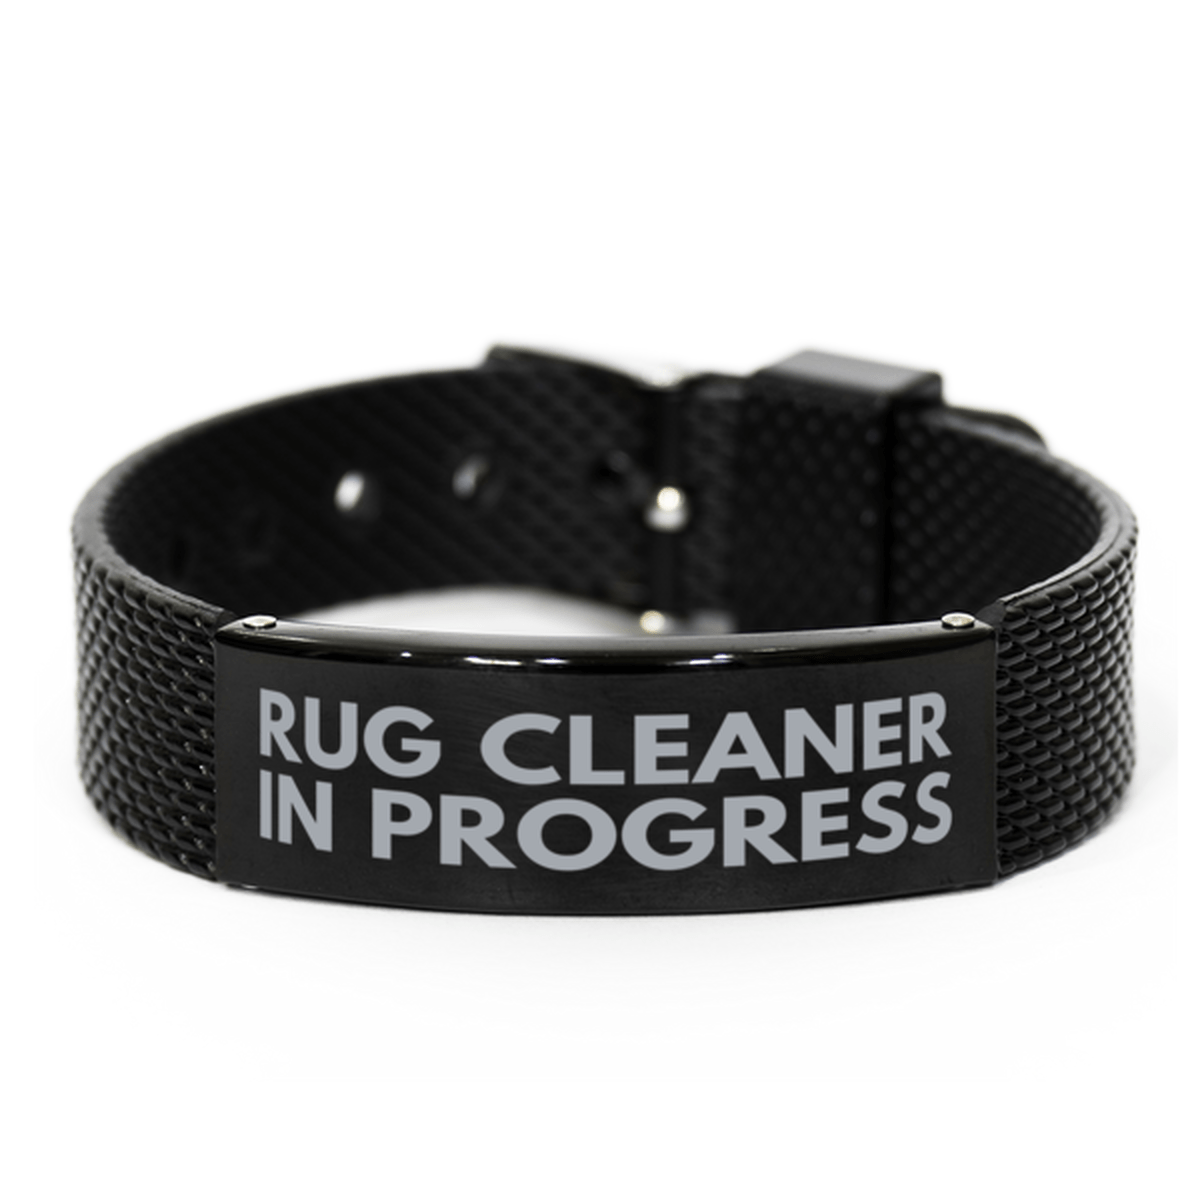 Inspirational Rug Cleaner Black Shark Mesh Bracelet, Rug Cleaner In Progress, Best Graduation Gifts for Students